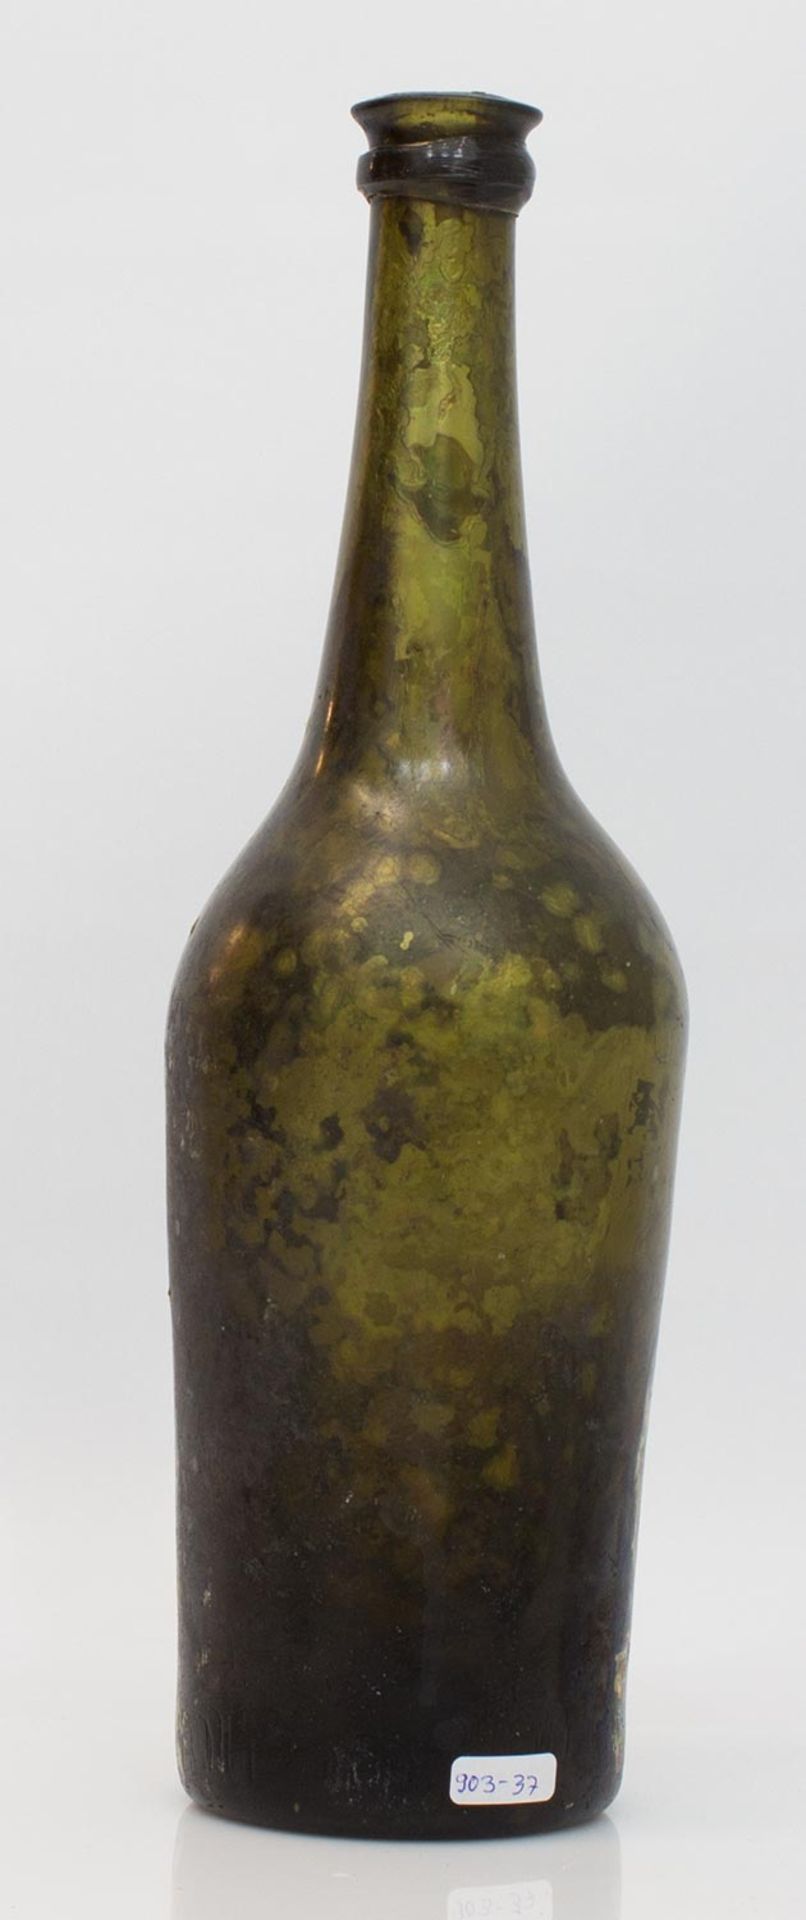 Waldglasflasche Mecklenburg frühes 19. Jh., hochgezogener Boden mit Abriss, Wasserfund, von Glaspest - Bild 2 aus 2